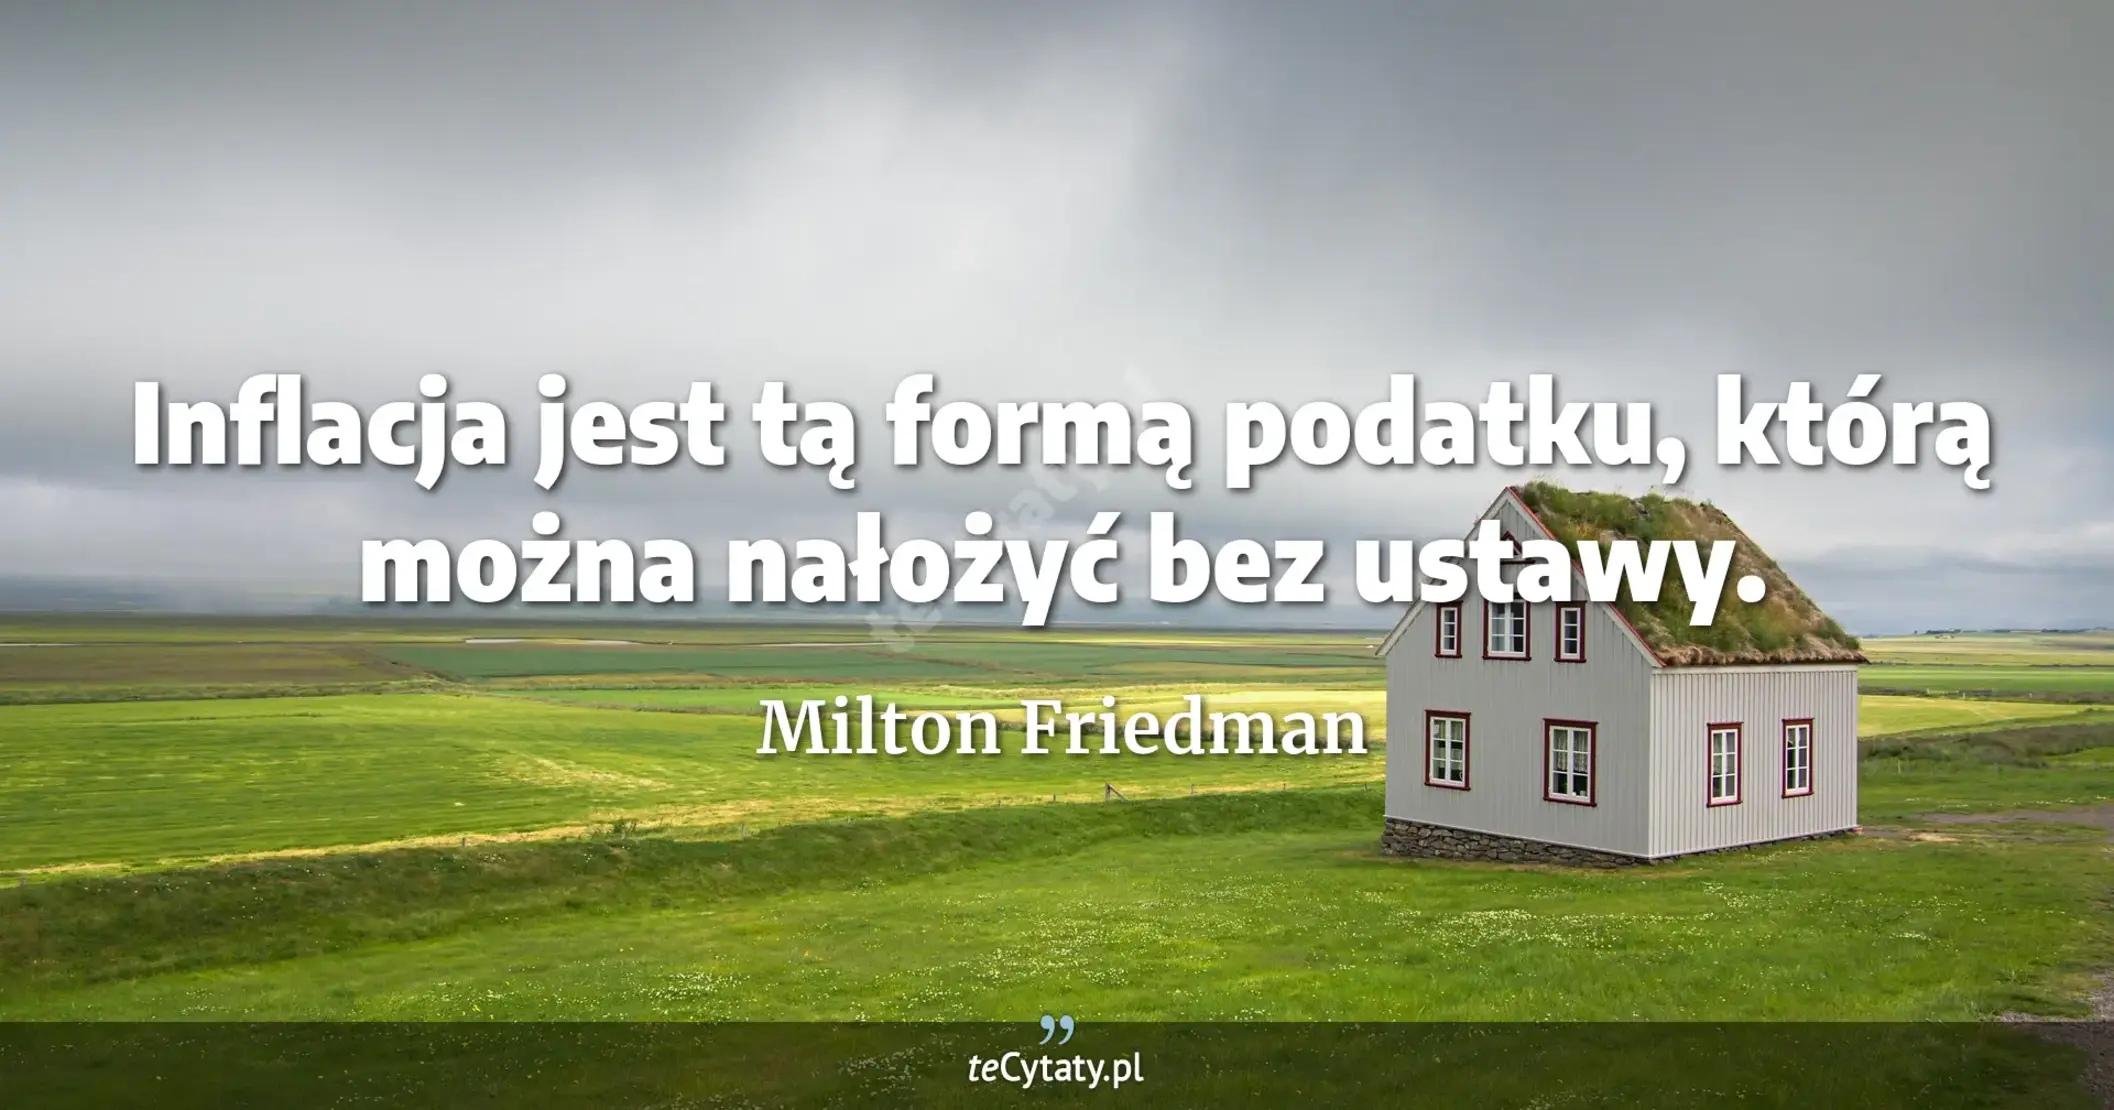 Inflacja jest tą formą podatku, którą można nałożyć bez ustawy. - Milton Friedman